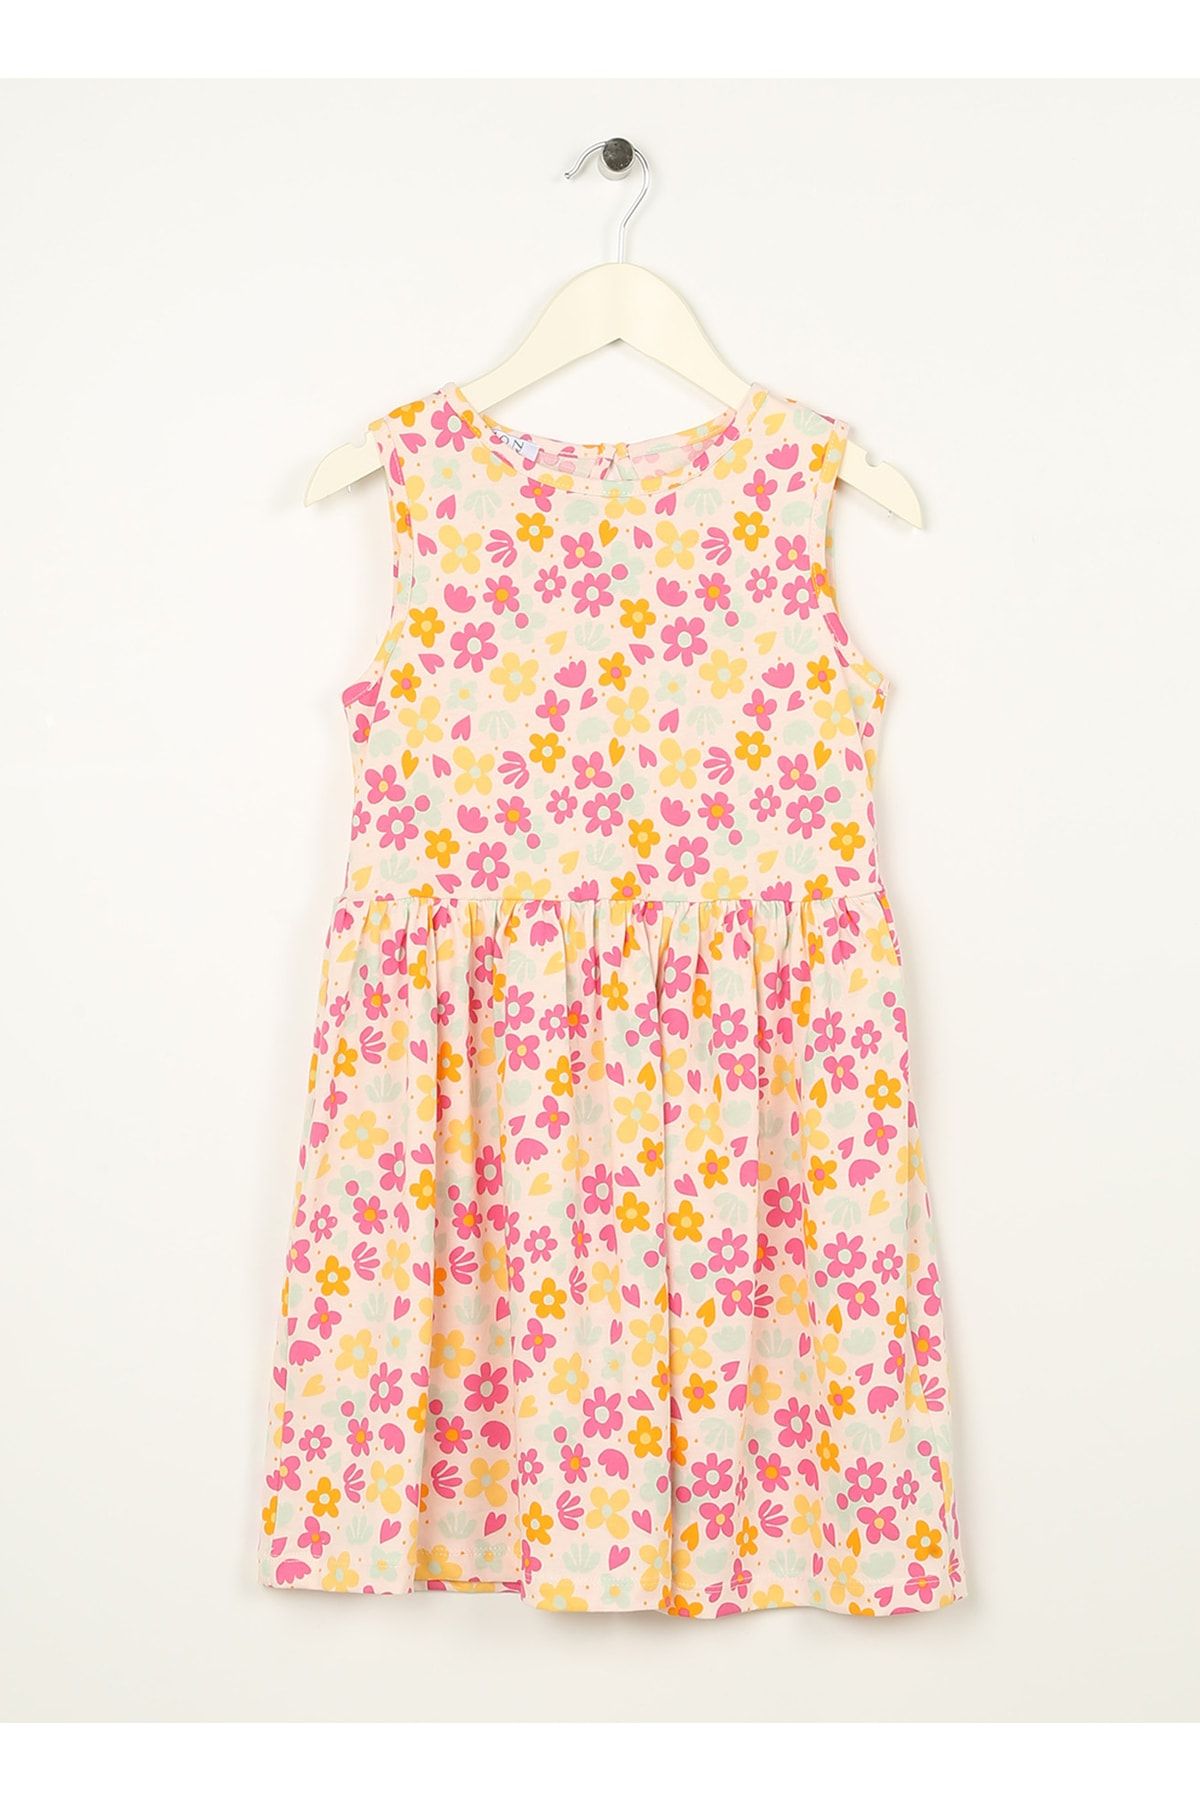 LİMON COMPANY Limon Desenli Çok Renkli Kız Çocuk Diz Üstü Elbise Dıem Gırl-23